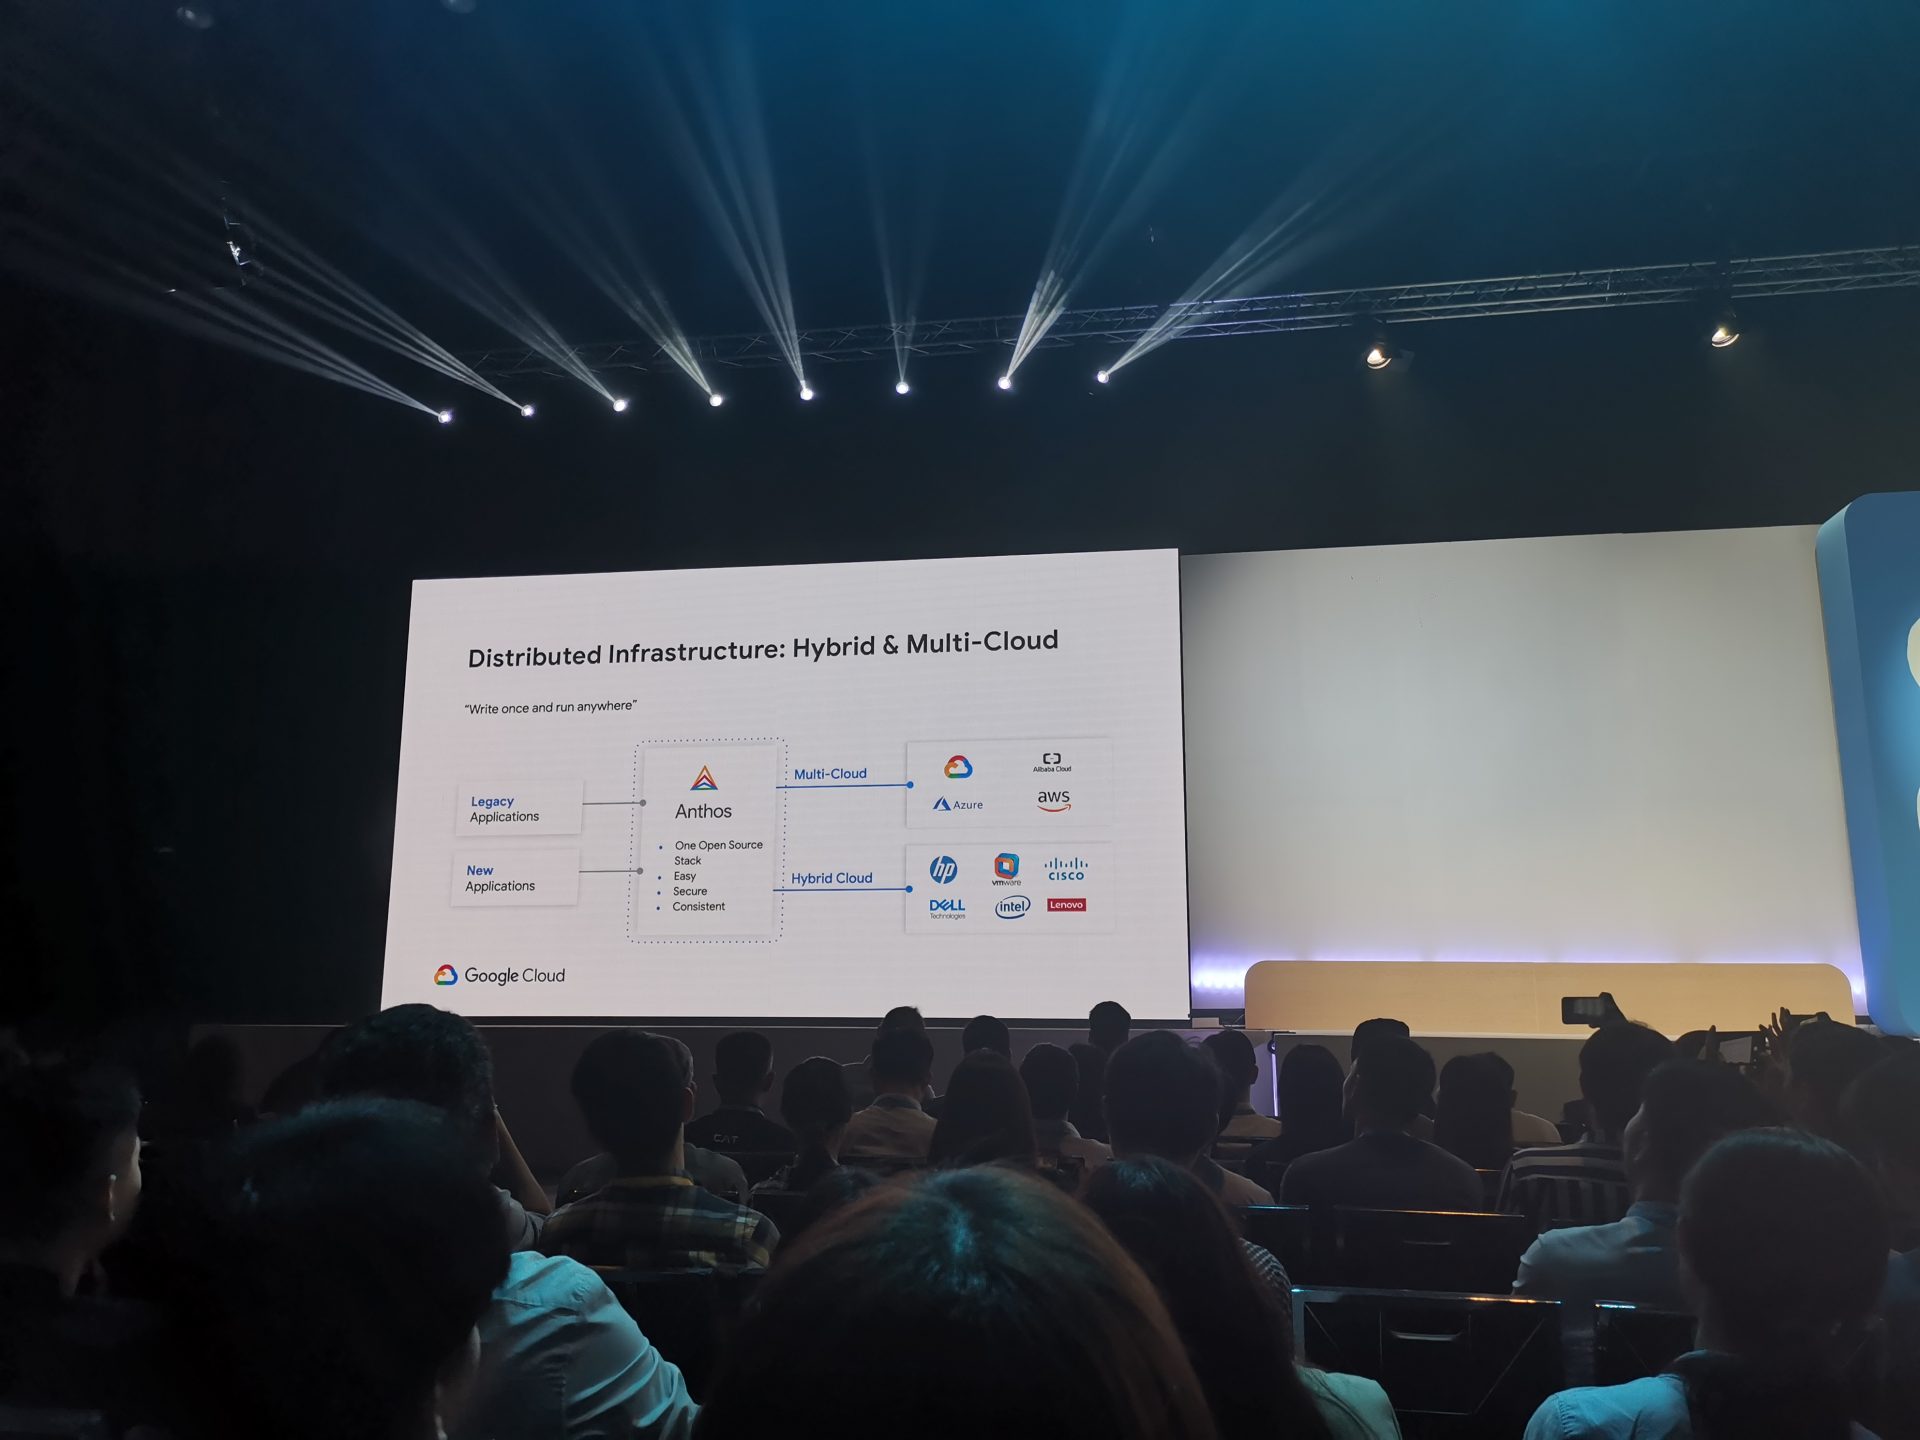 ภาพจากงาน Google Cloud Summit 2019 